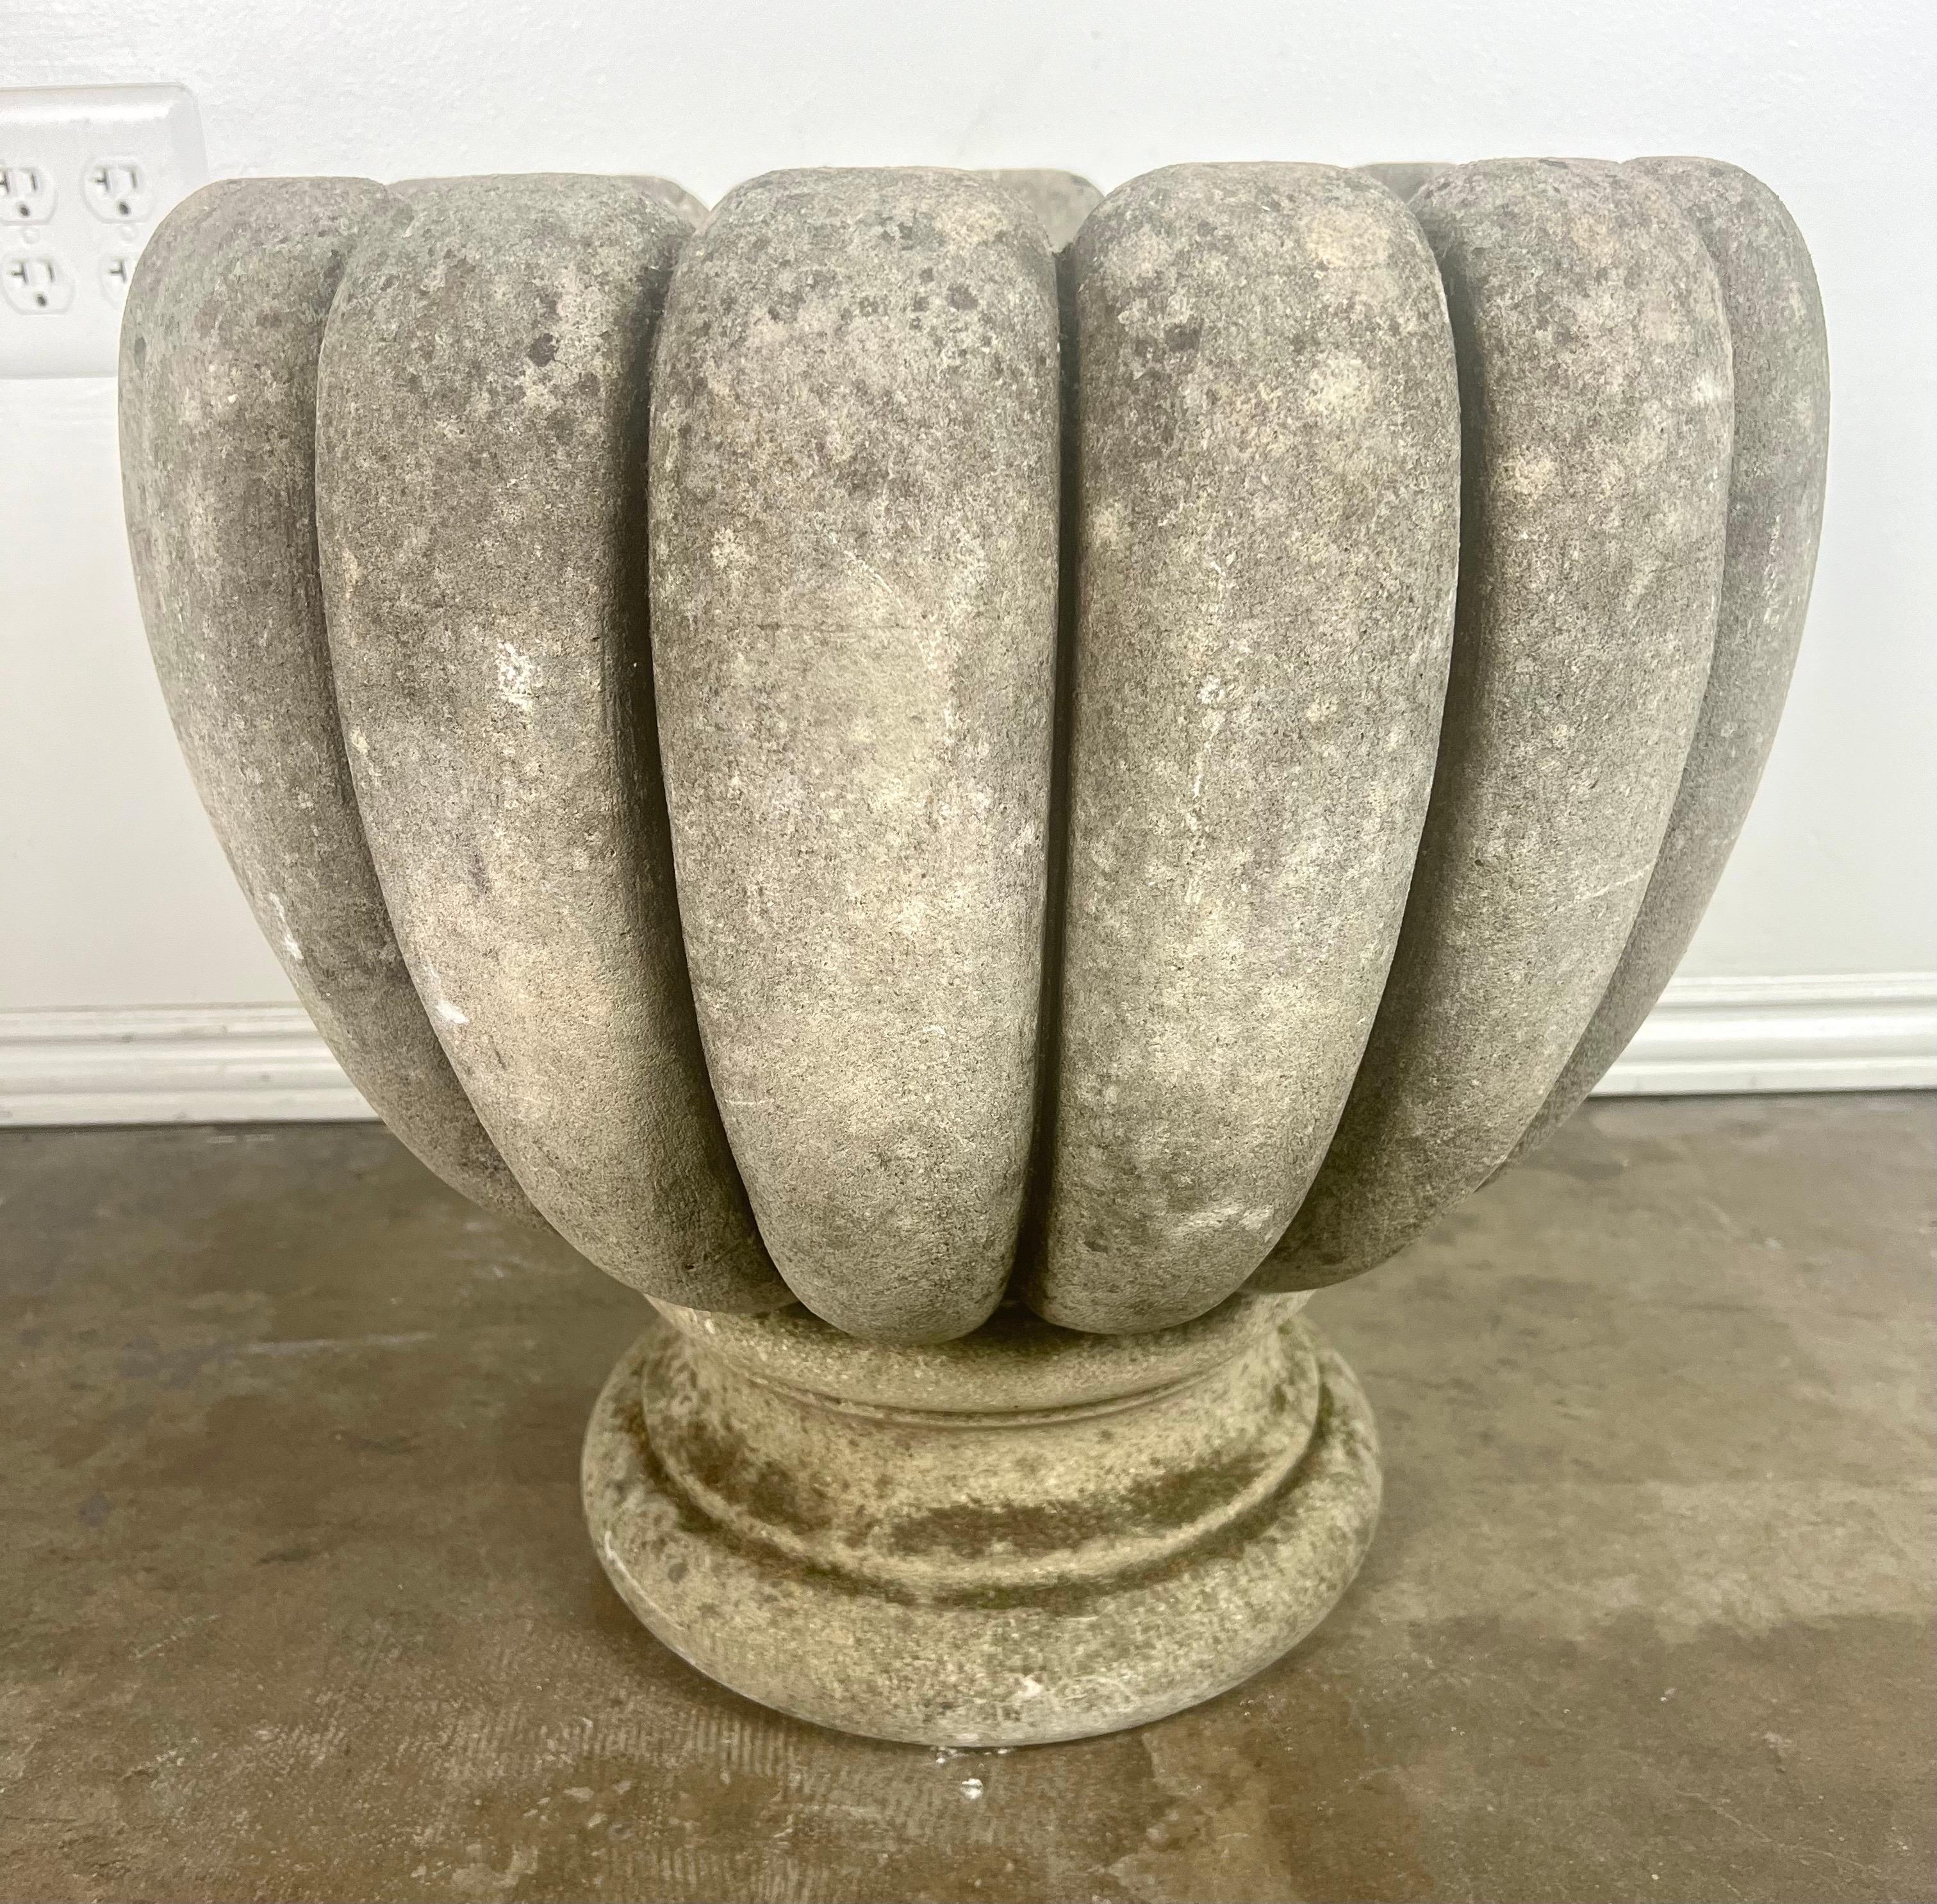 Diese aus Zement gefertigte italienische Urne in Tulpenform verbindet robuste Funktionalität mit ästhetischer Anmut und ist damit eine eindrucksvolle Ergänzung für jeden Garten.  Die Tulpenform ist einzigartig und bietet eine weiche, geschwungene